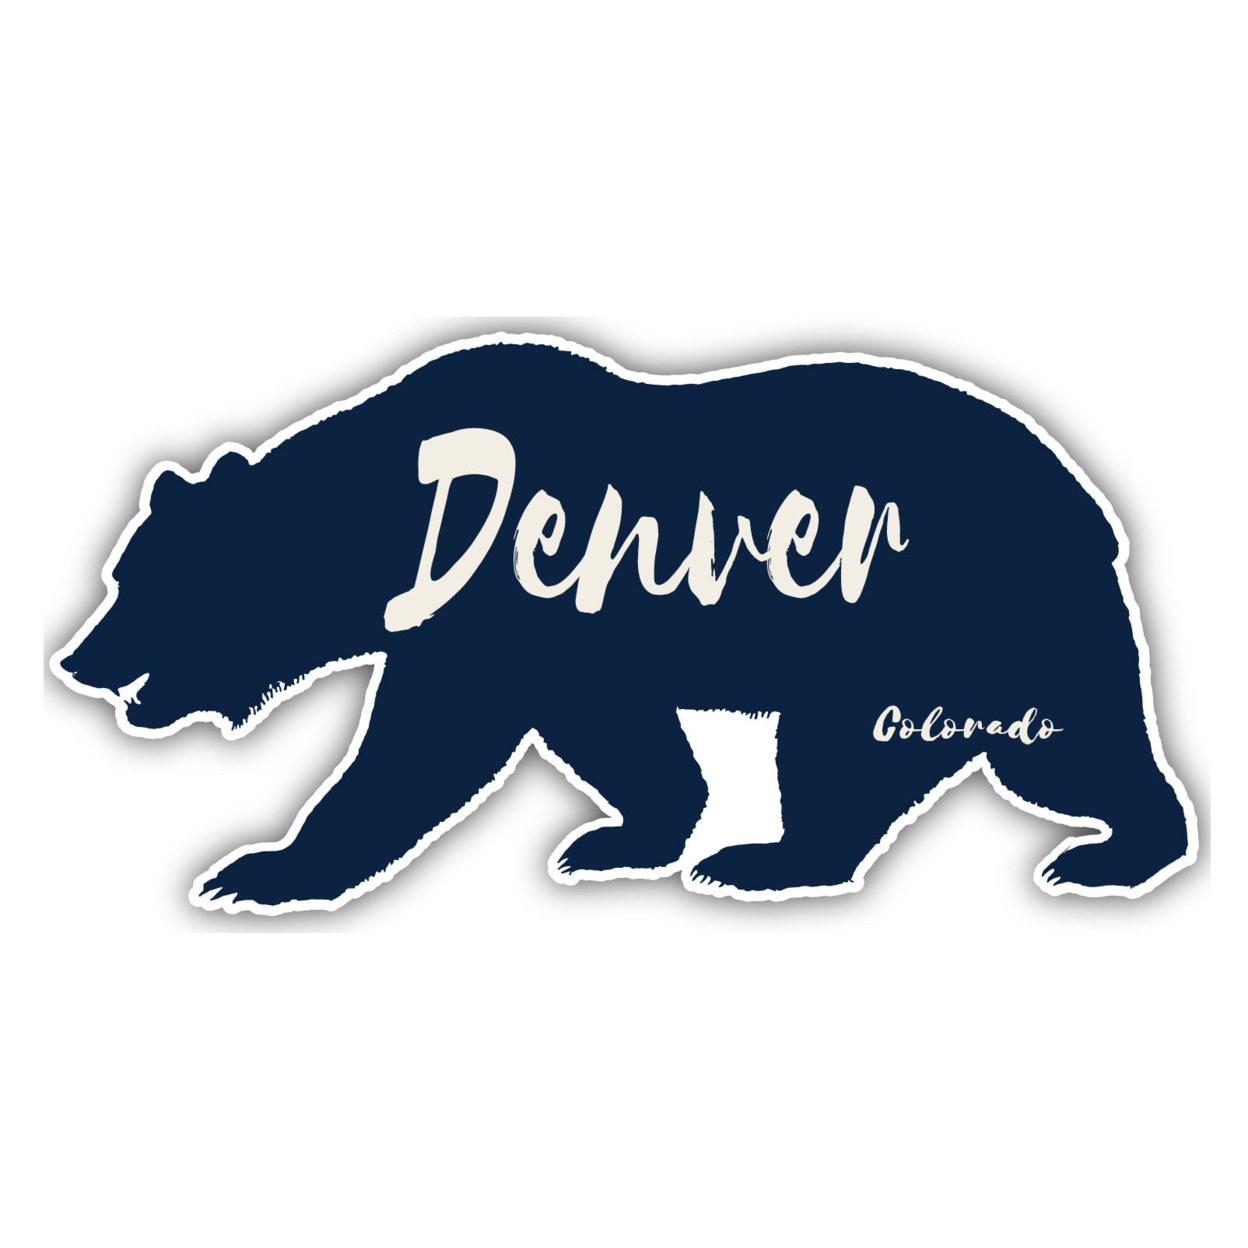 Denver Colorado Souvenir Decorative Stickers (Choose Theme And Size) - Single Unit, 10-Inch, Tent